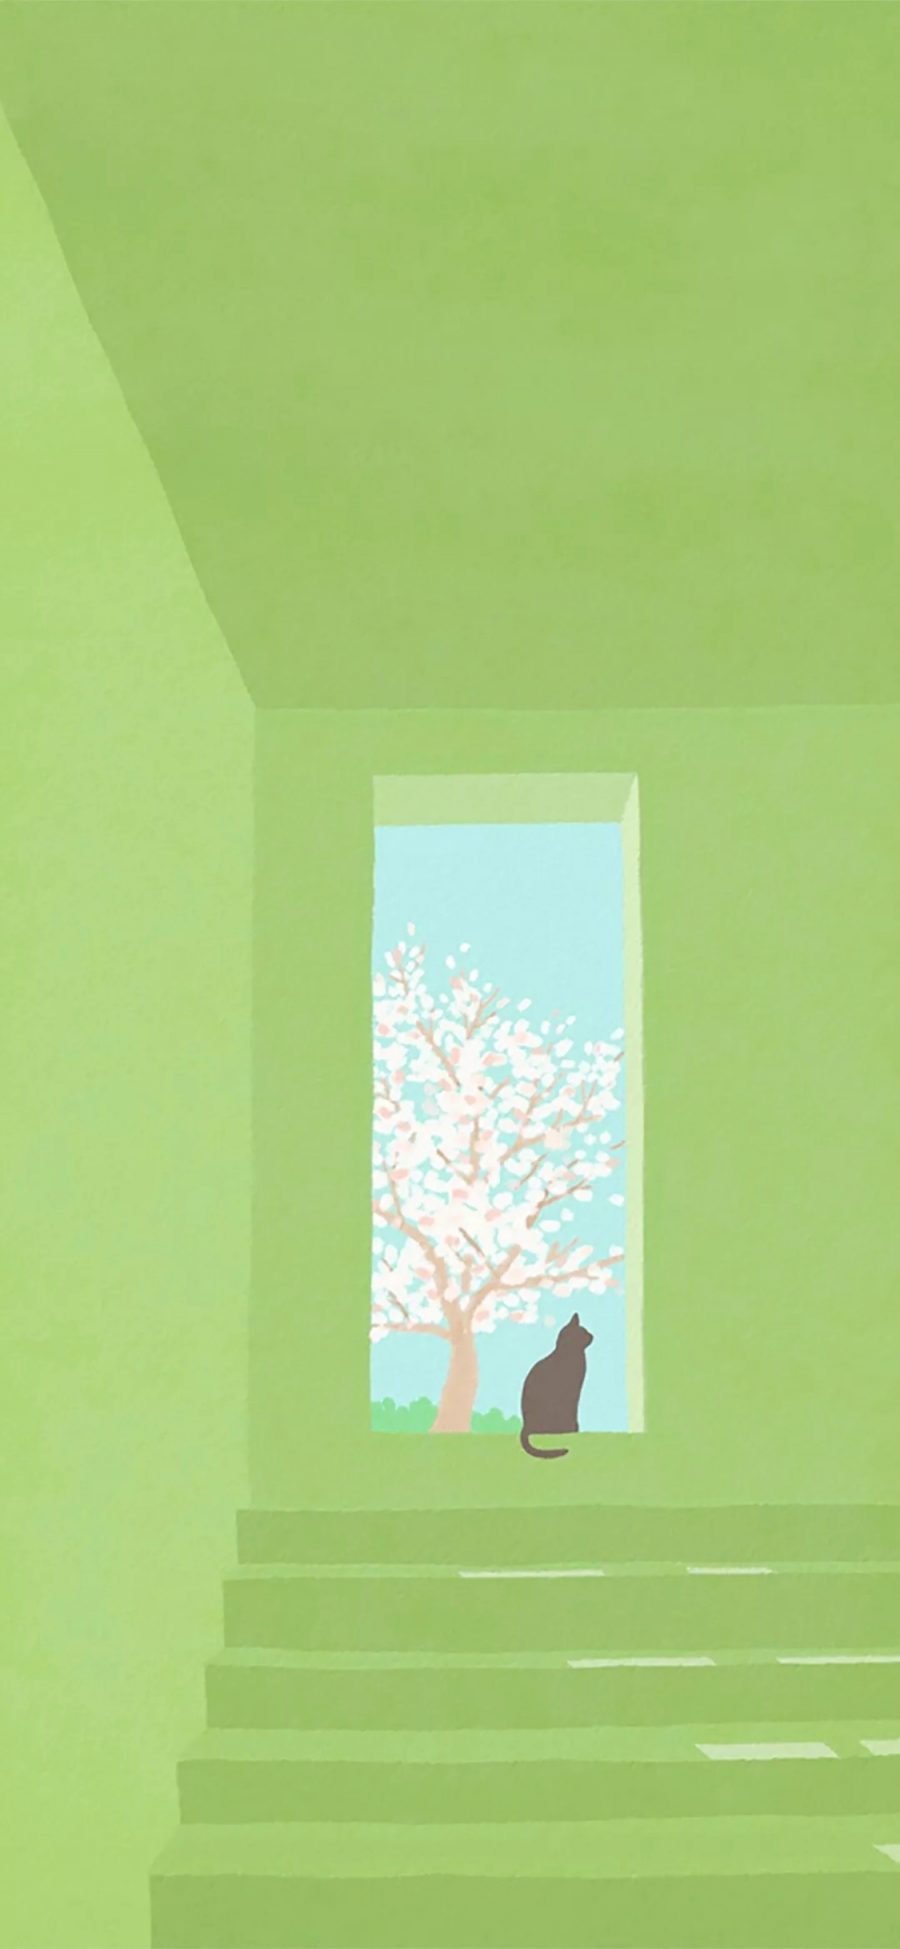 [2436×1125]插图 绿色 猫咪 树木 苹果手机动漫壁纸图片